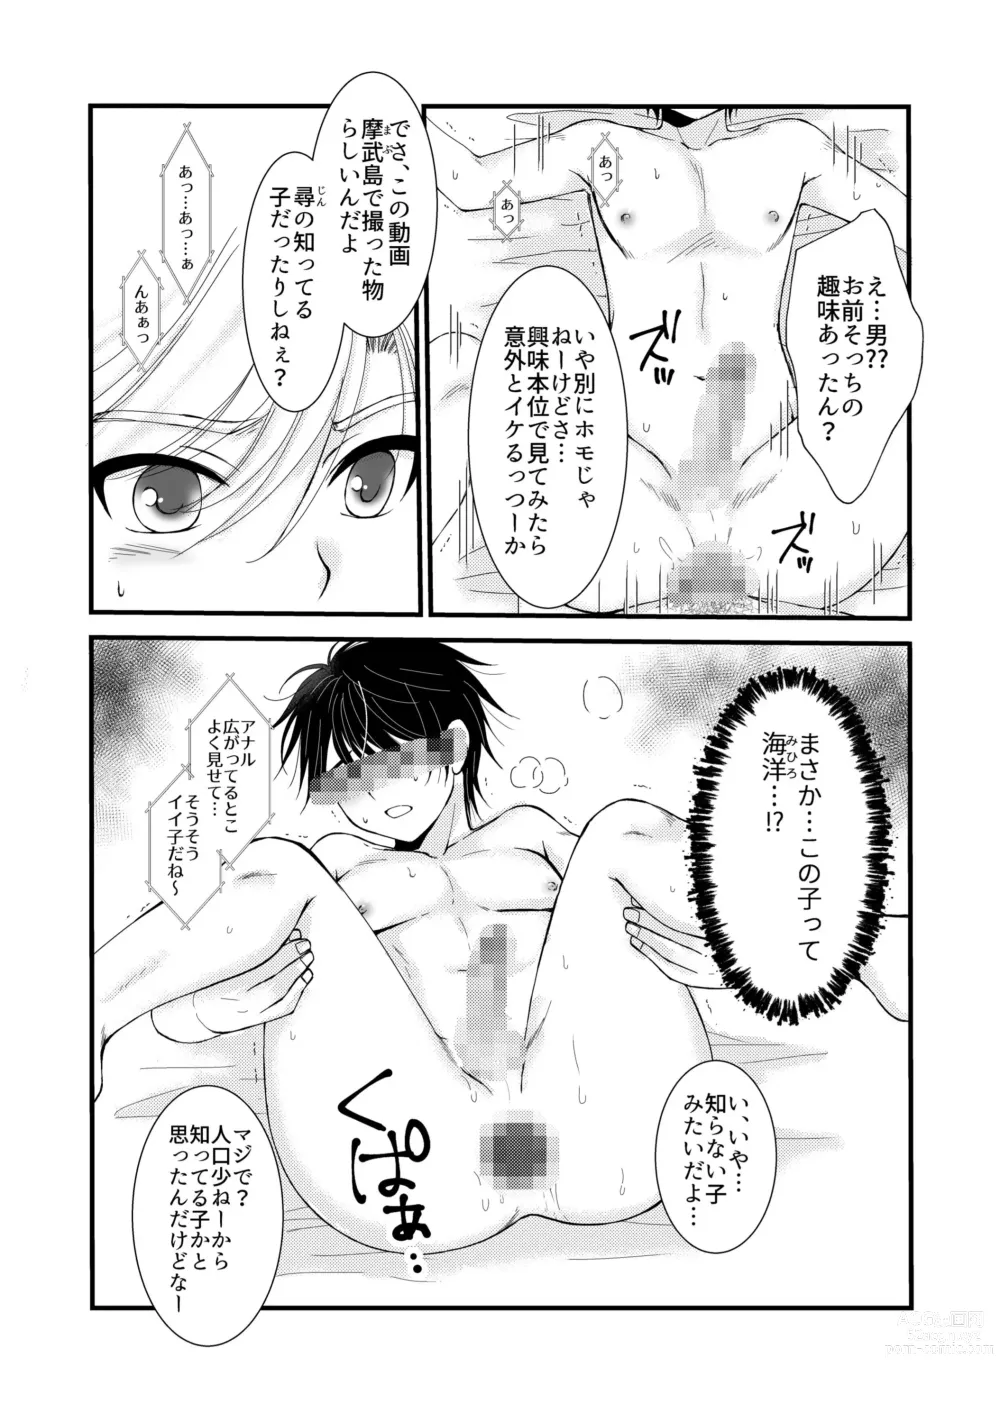 Page 4 of doujinshi Oitekita Umi